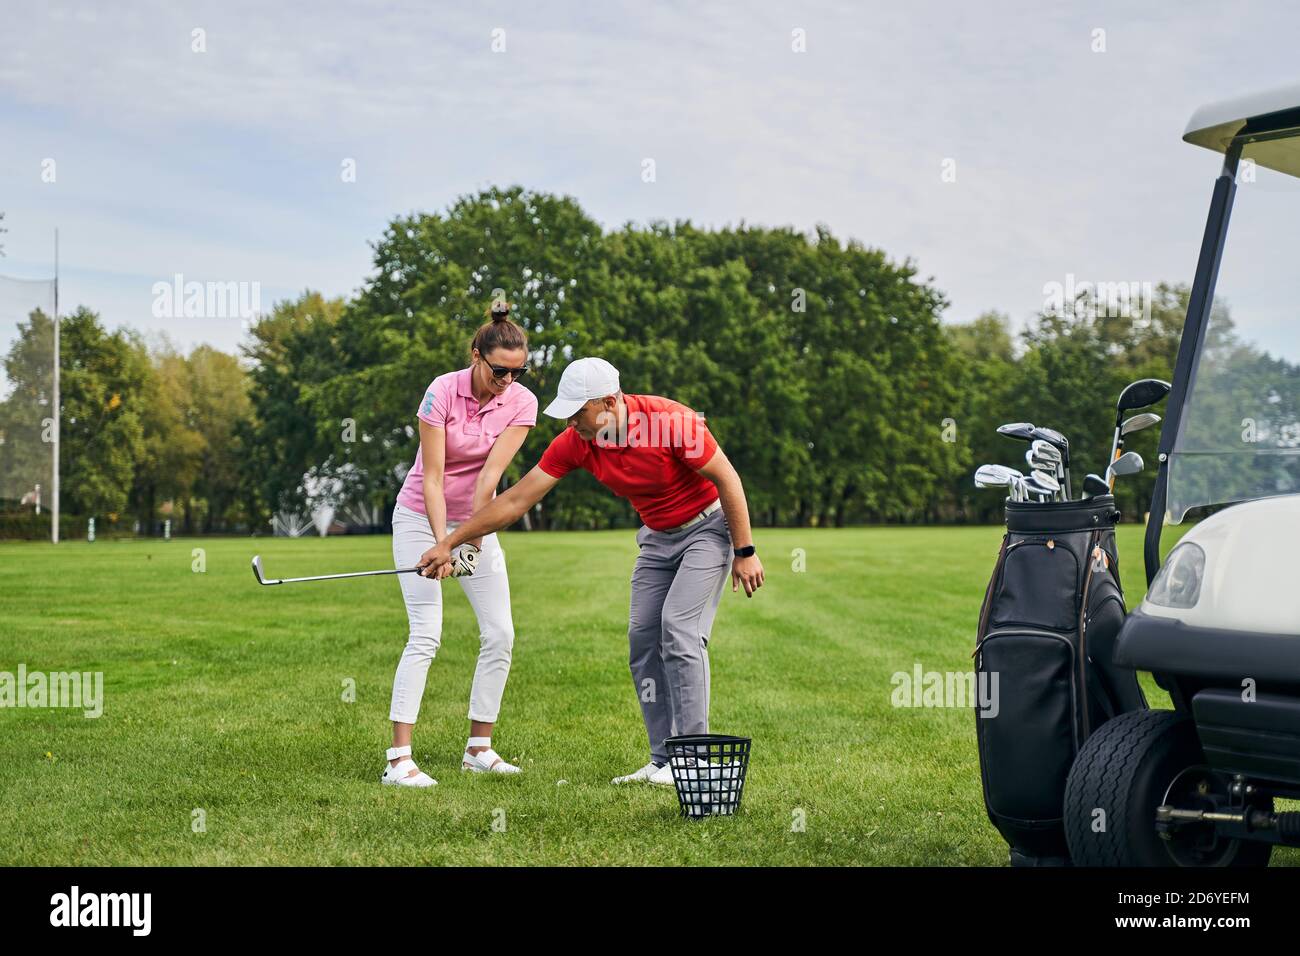 Smiling lady golfer mastering the golf basics Stock Photo